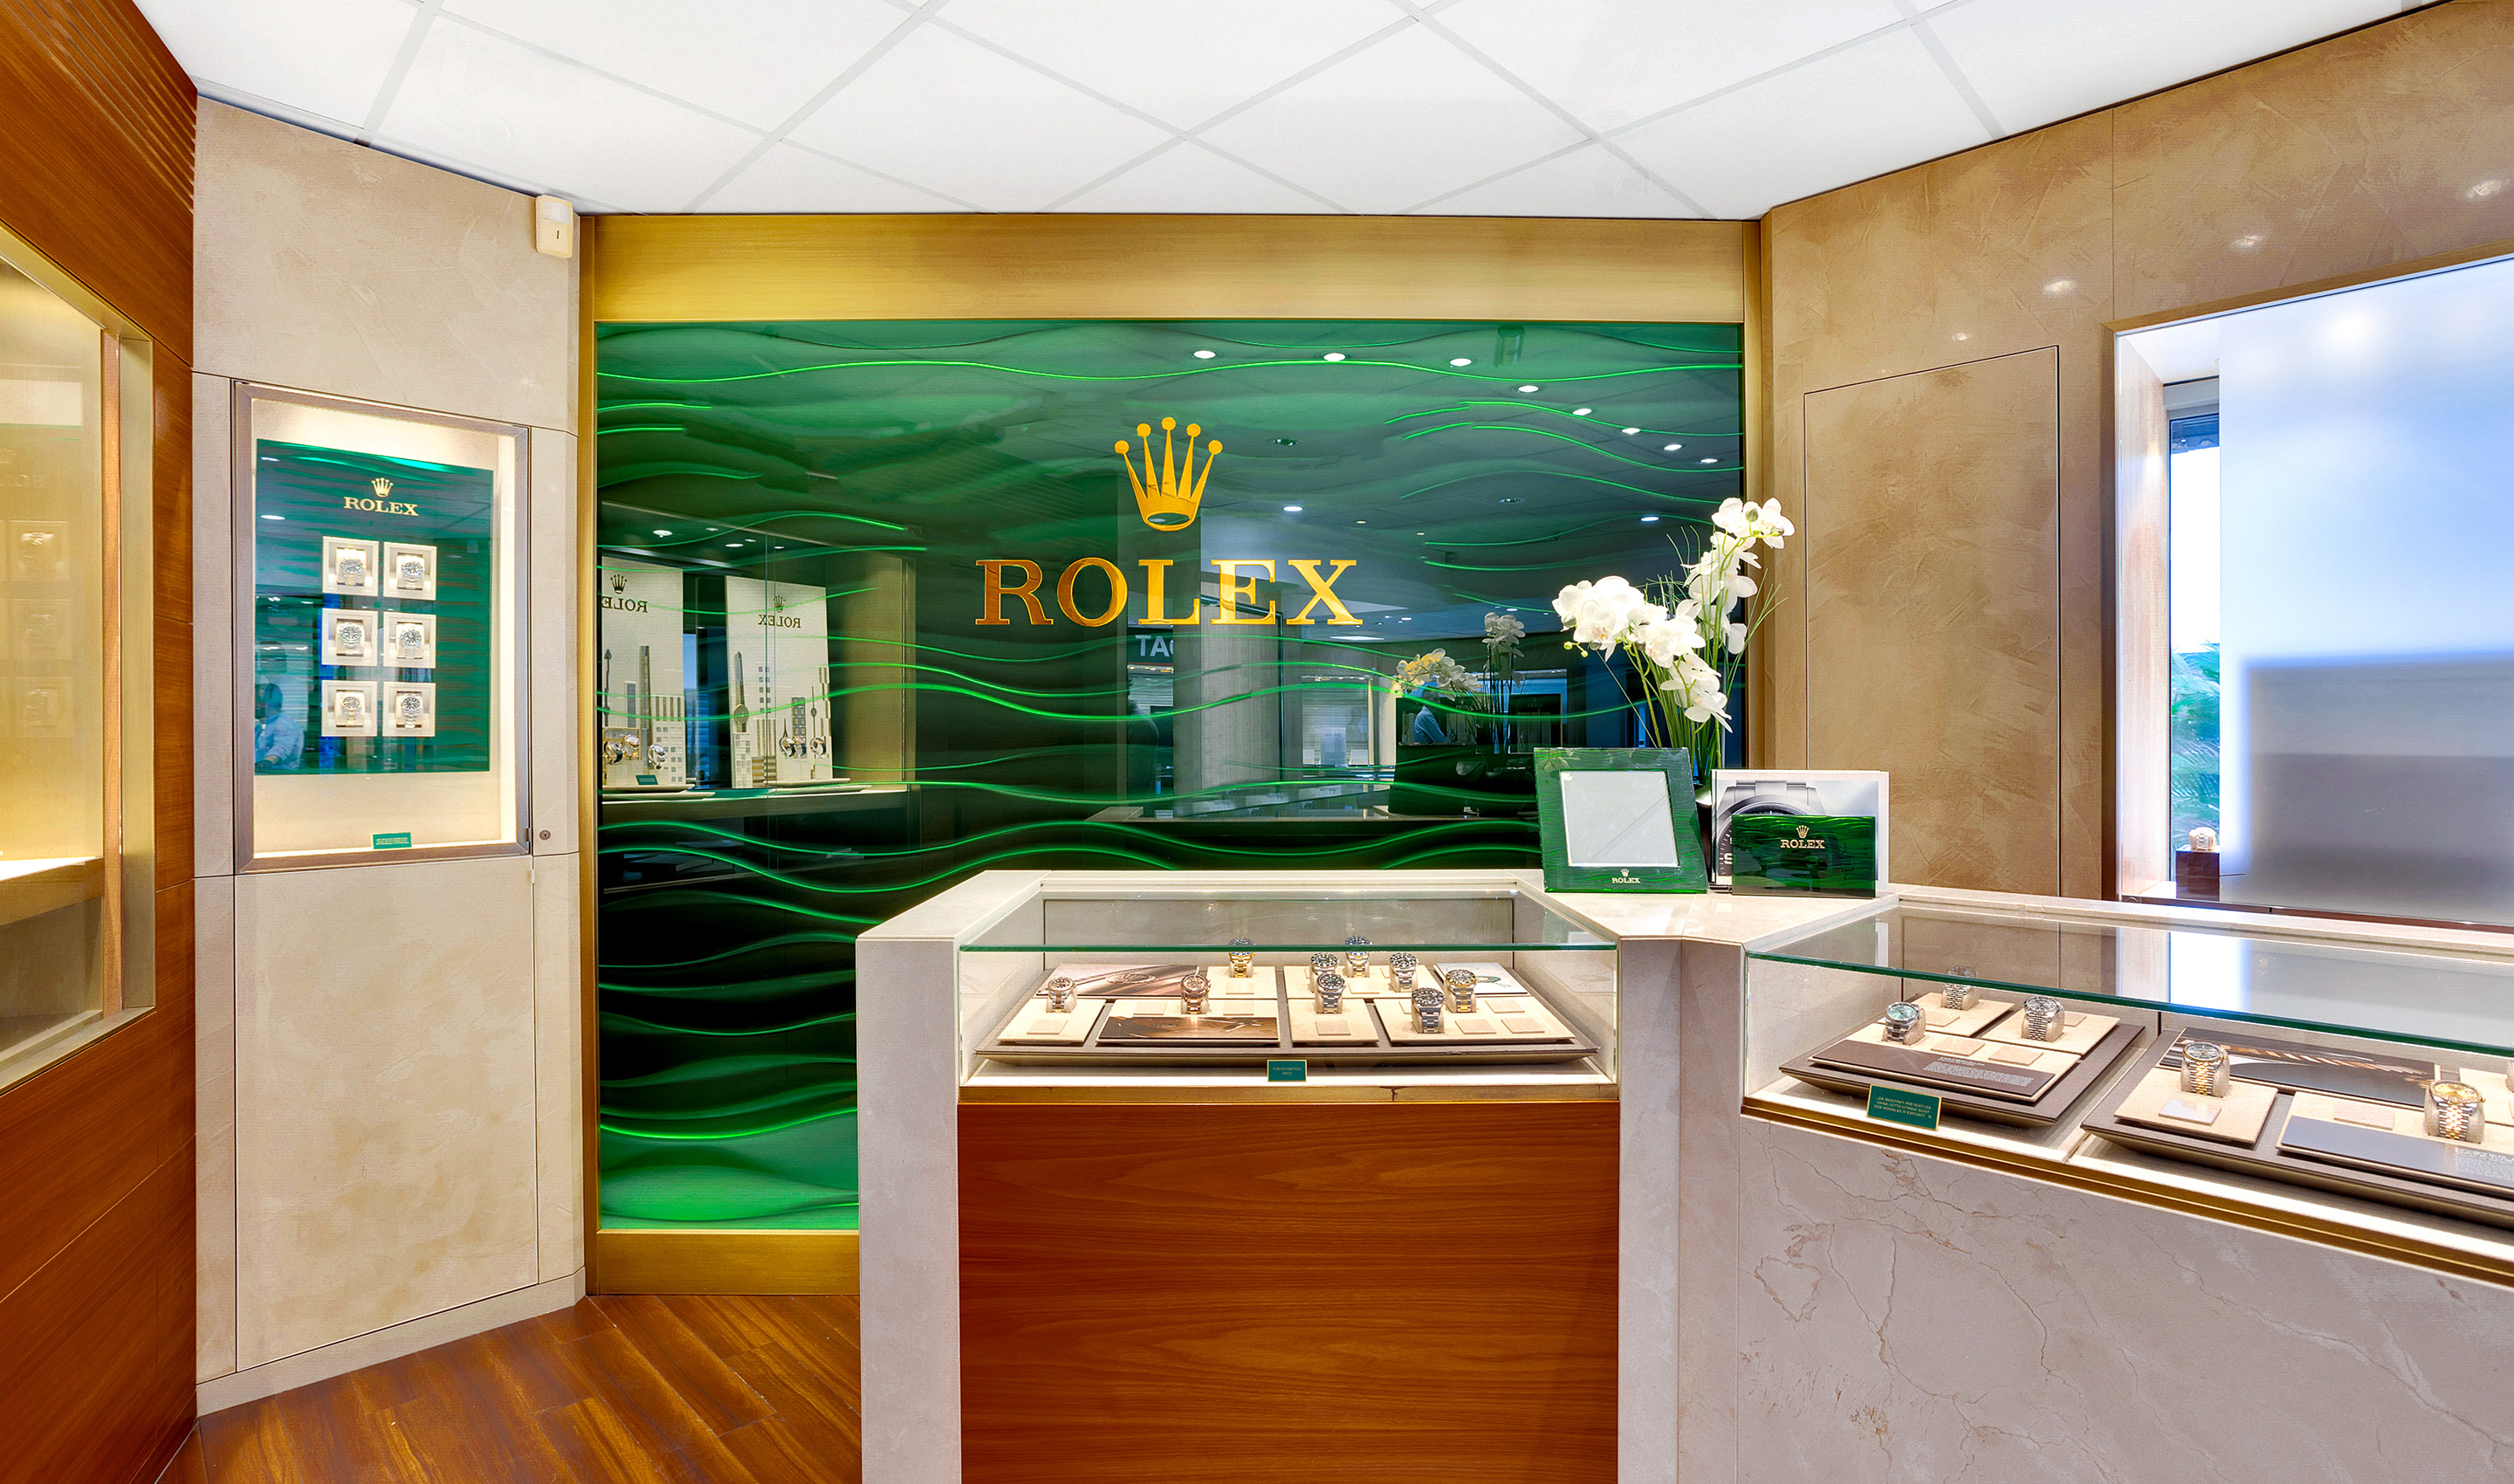  Contactez Goldfinger Saint-Martin (Antilles), bijoutier officiel Rolex